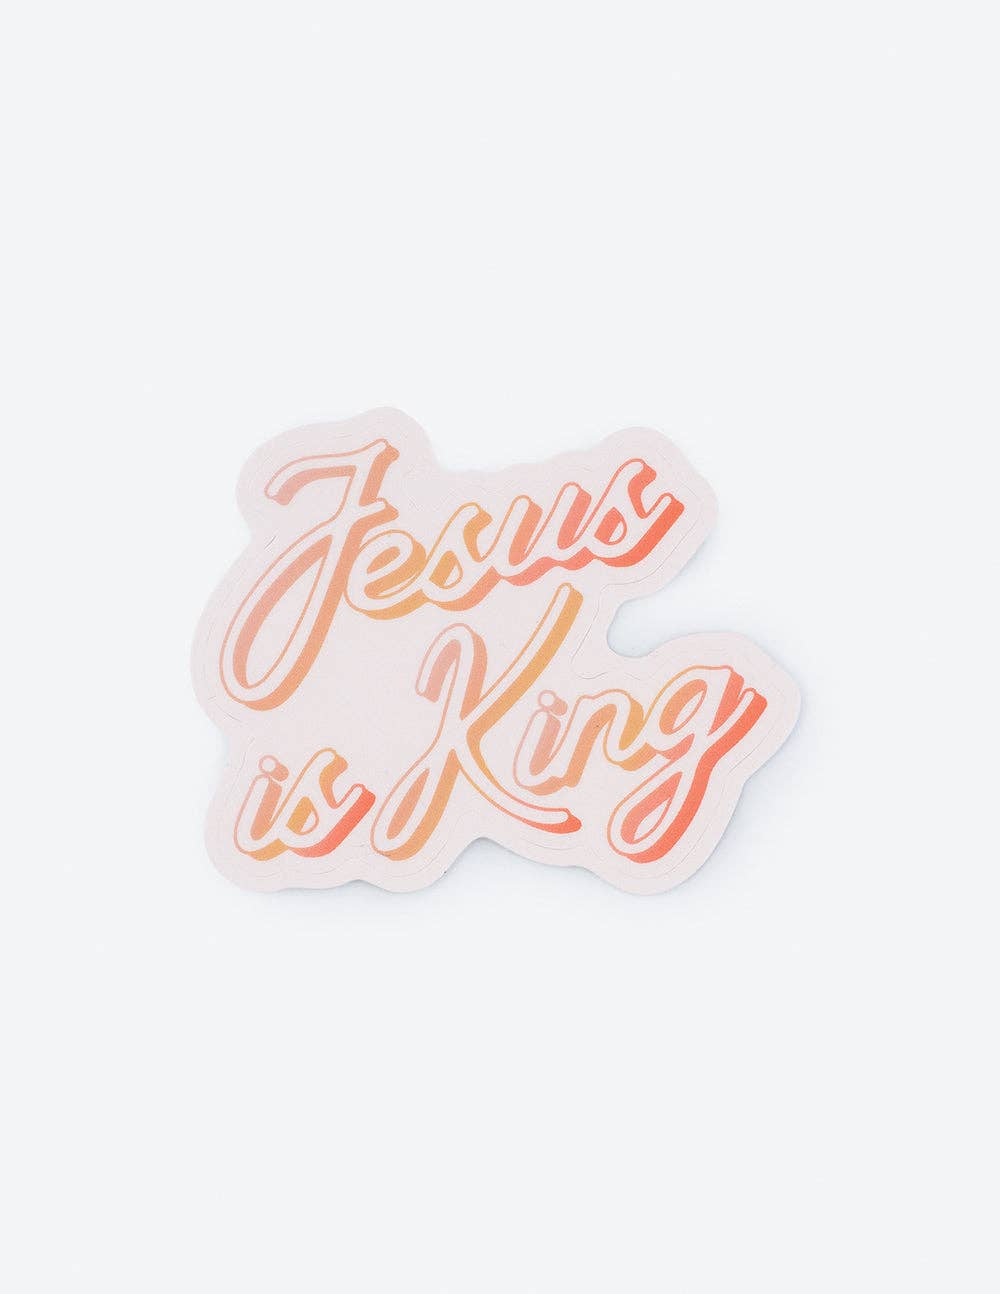 Jesus Is King Sticker